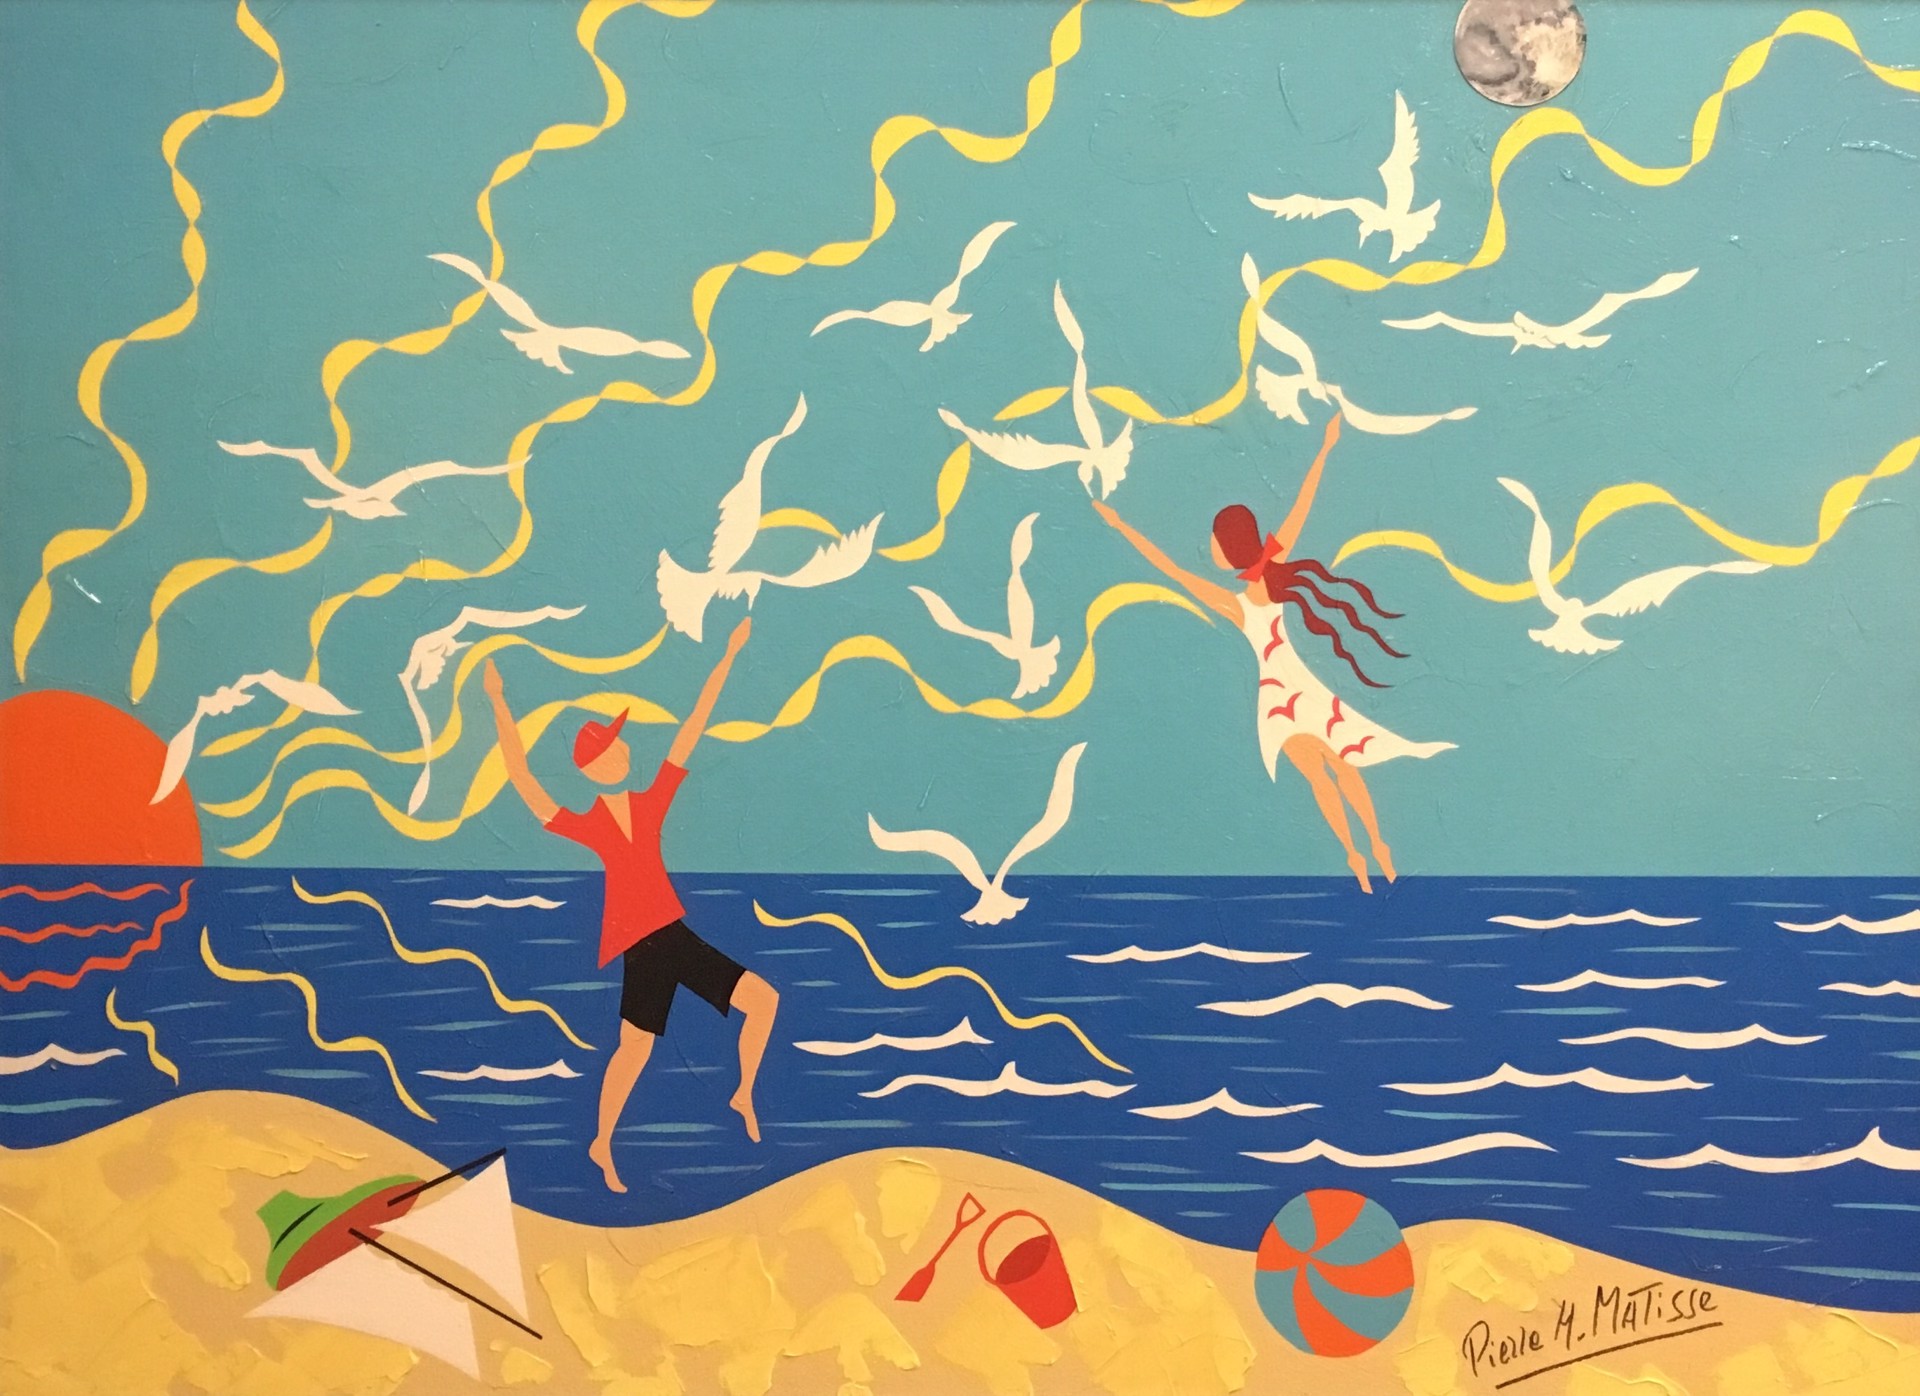 Le Joie de Vivre by Pierre Matisse